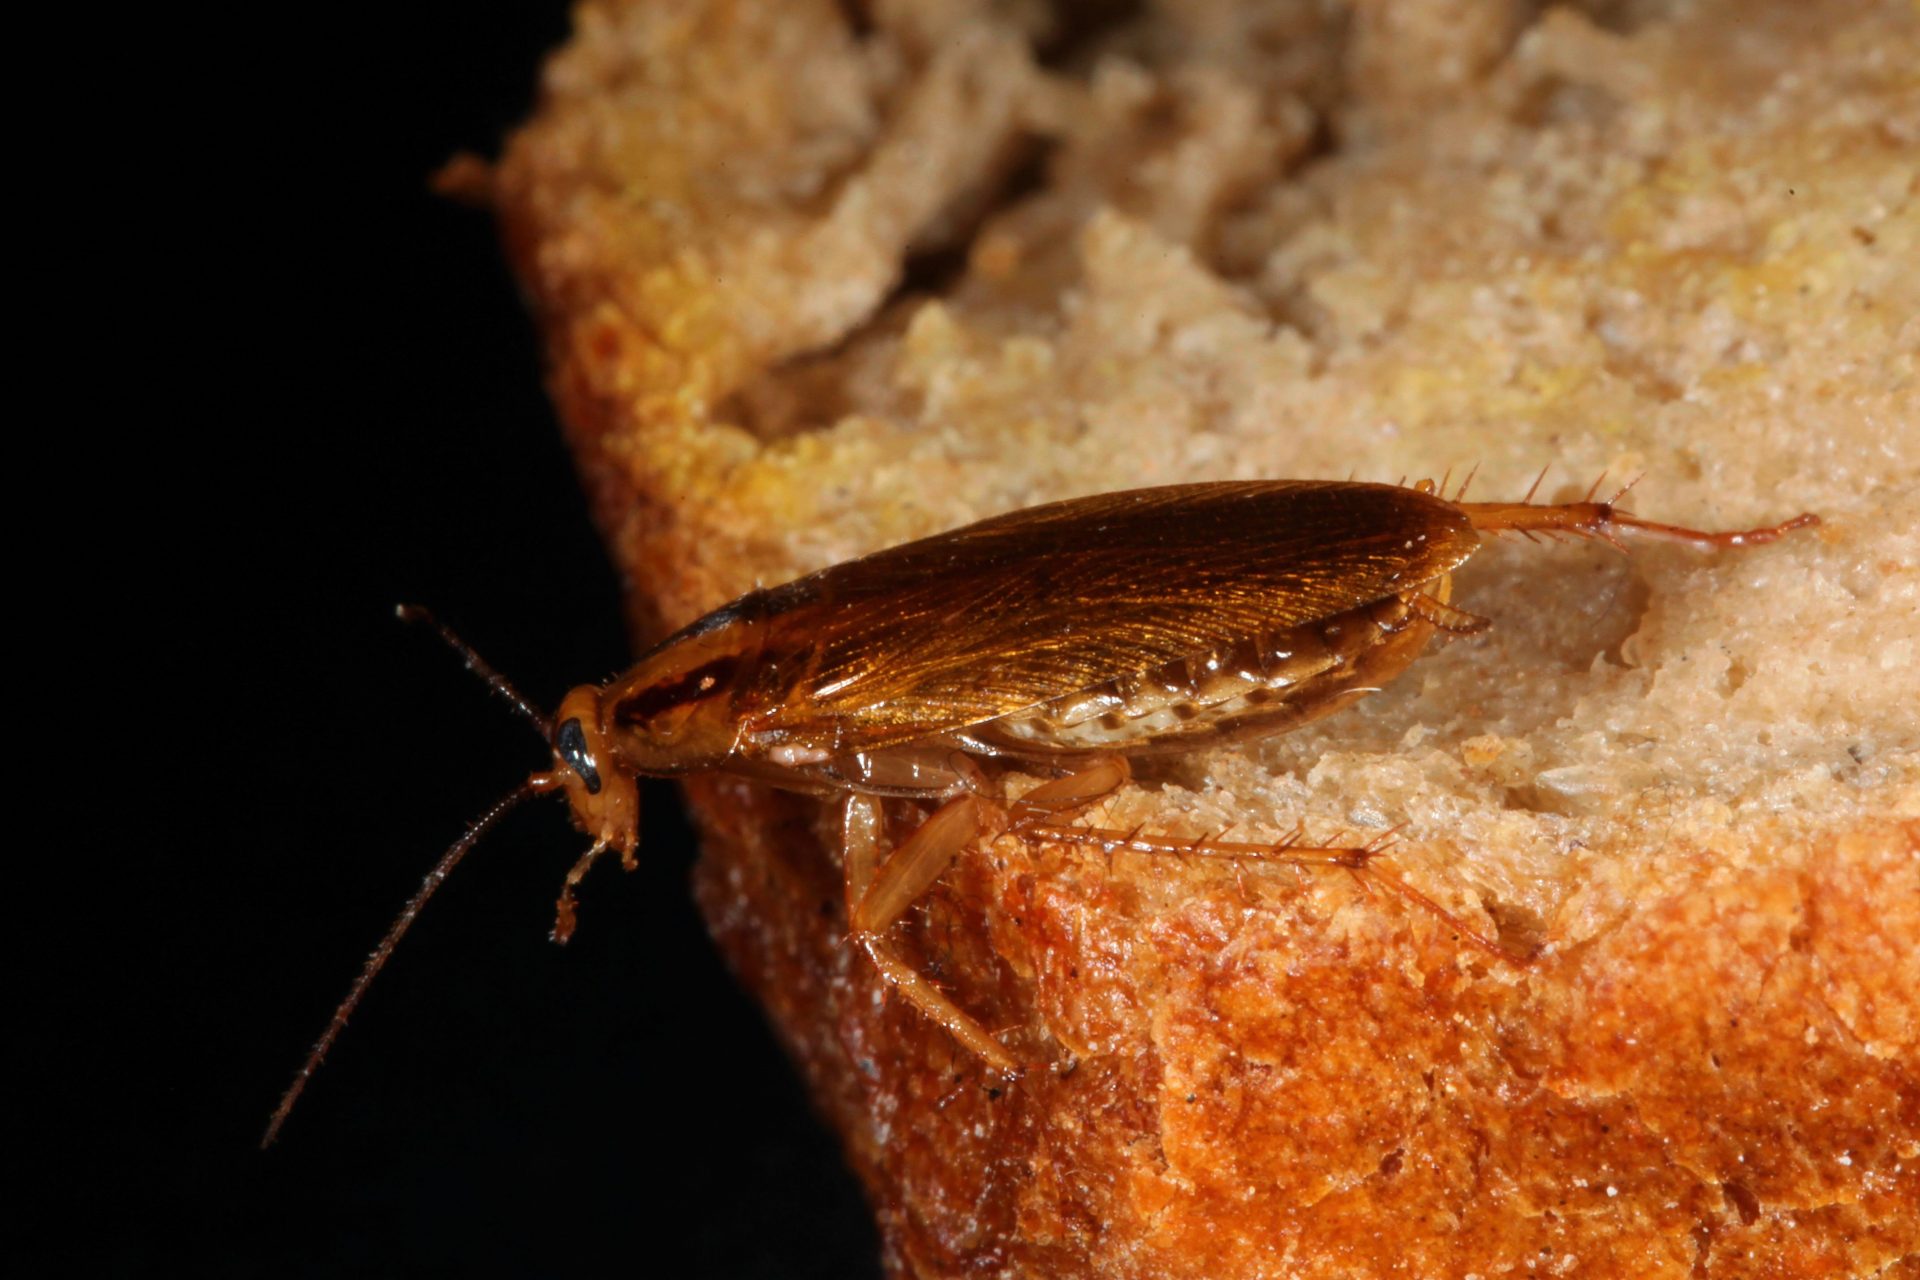 ¿Cuál es la historia y el secreto oculto detrás del Insecto considerado “repugnante